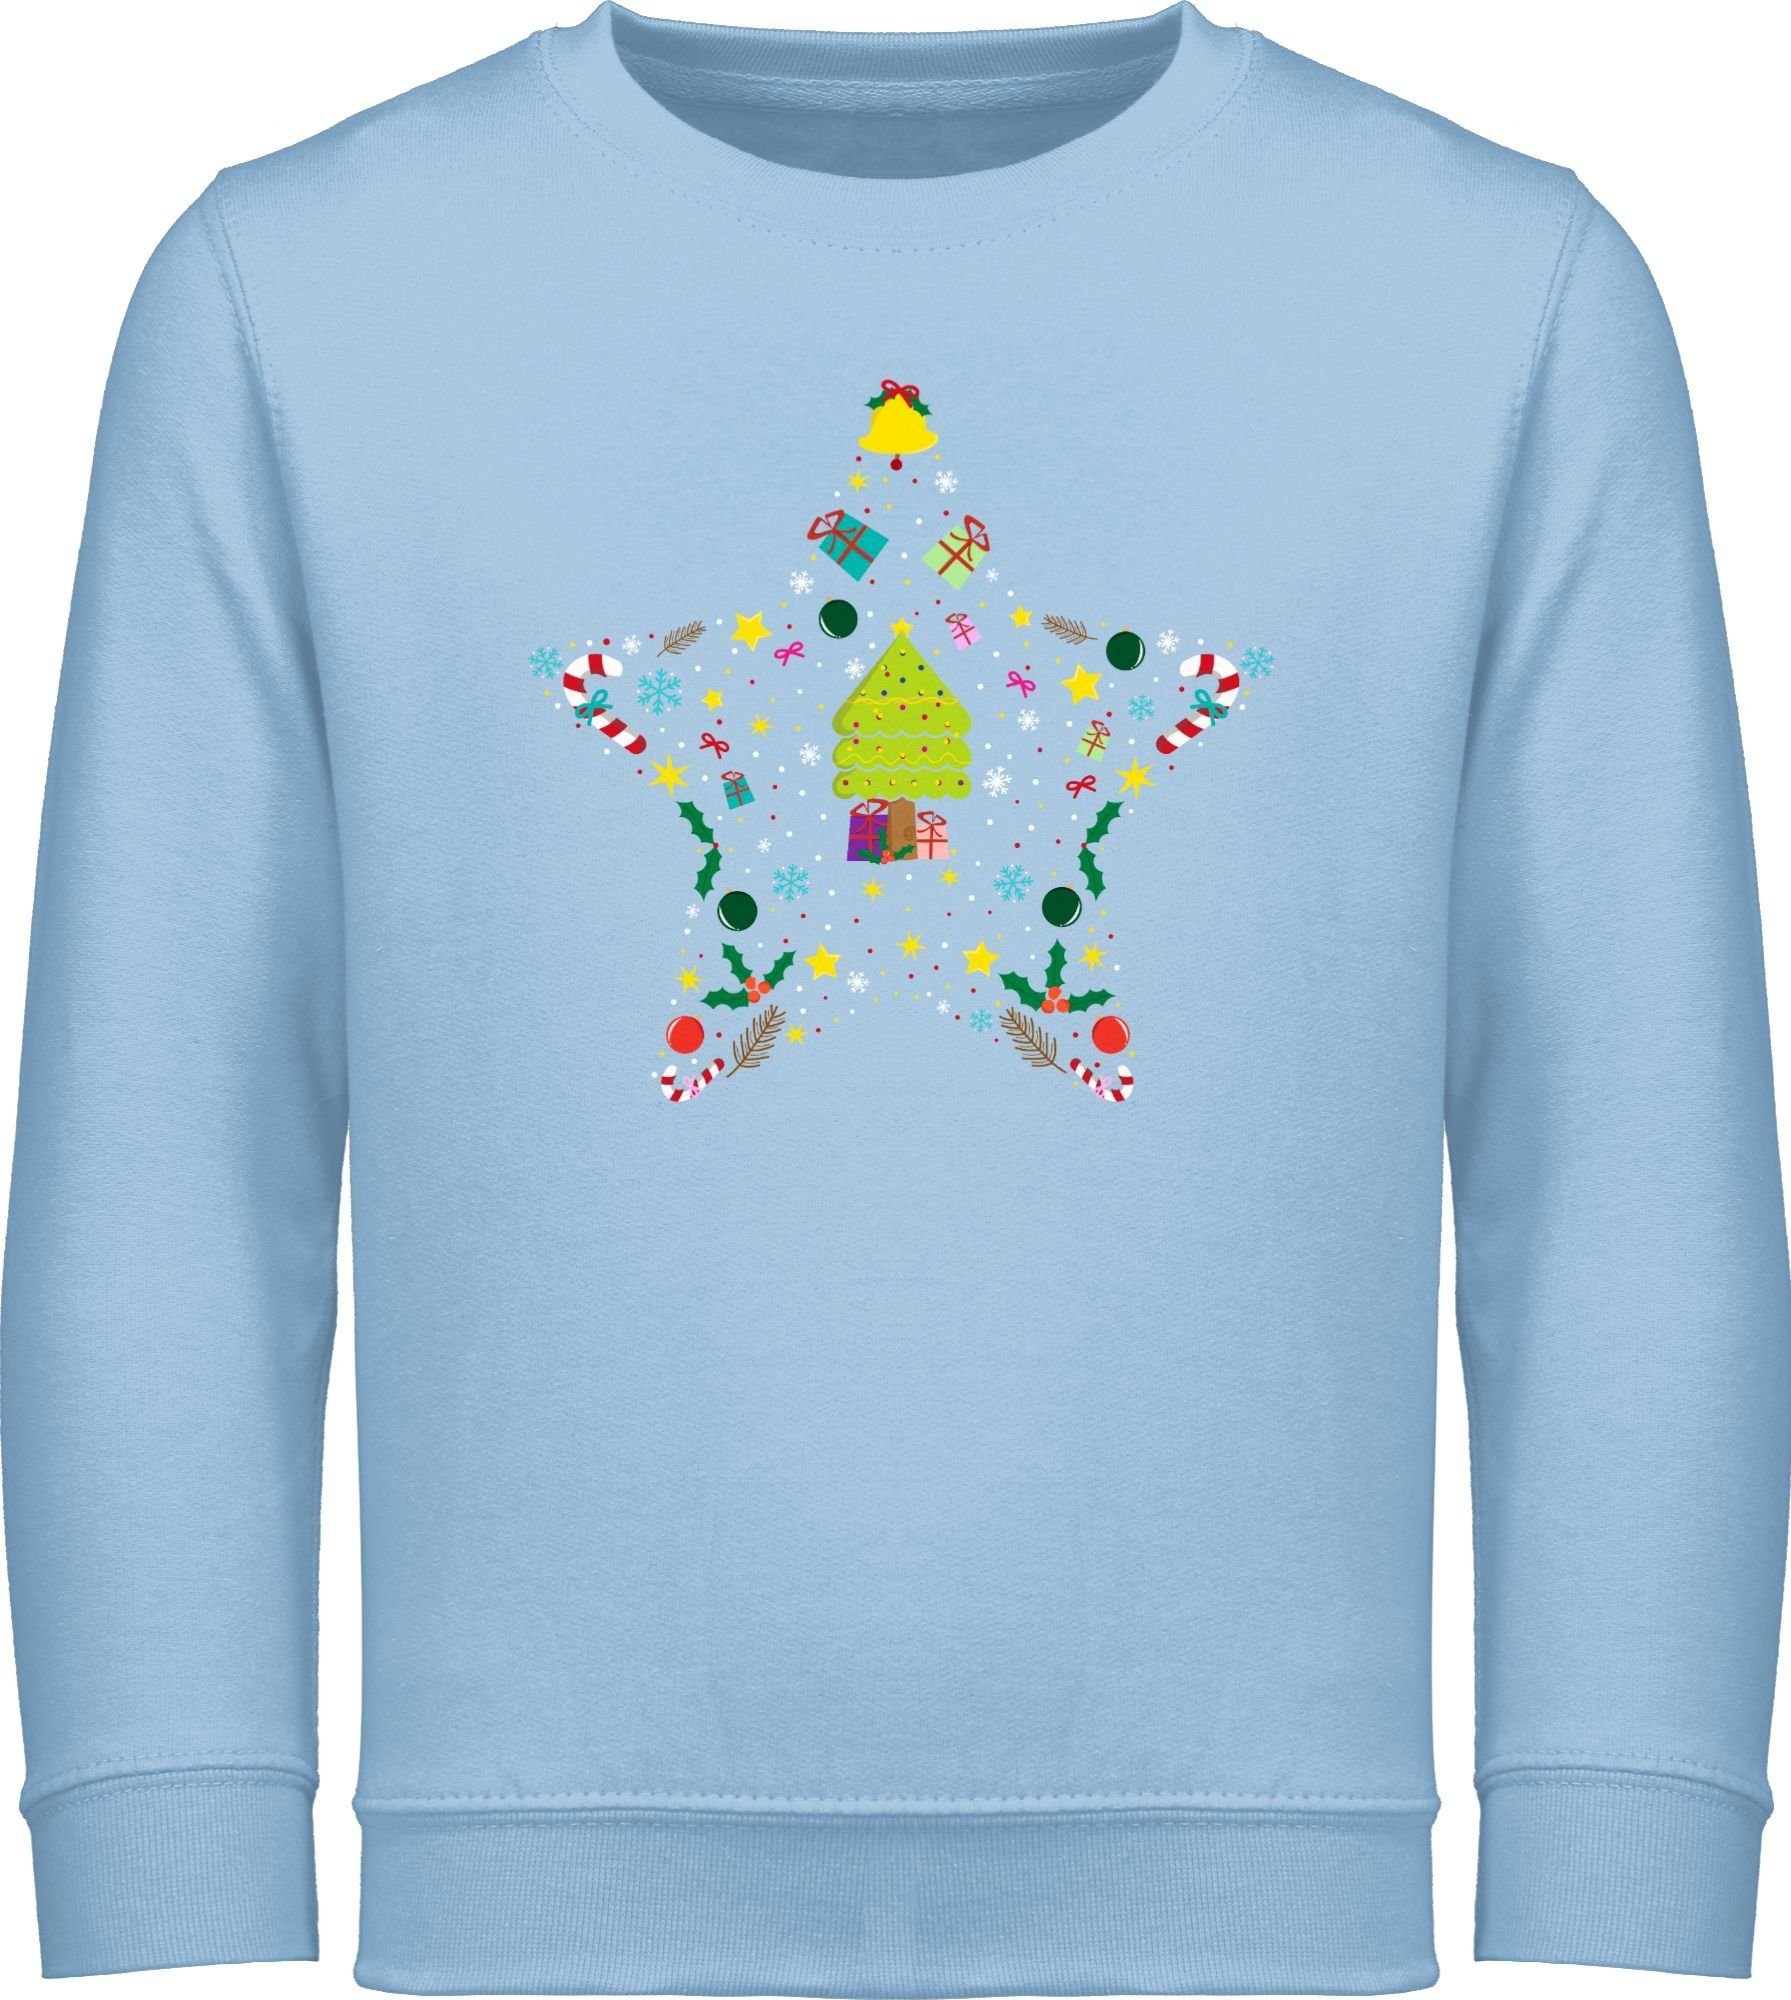 Kleidung Kinder Weihnachtsstern Sweatshirt Weihnachten Shirtracer 3 Hellblau